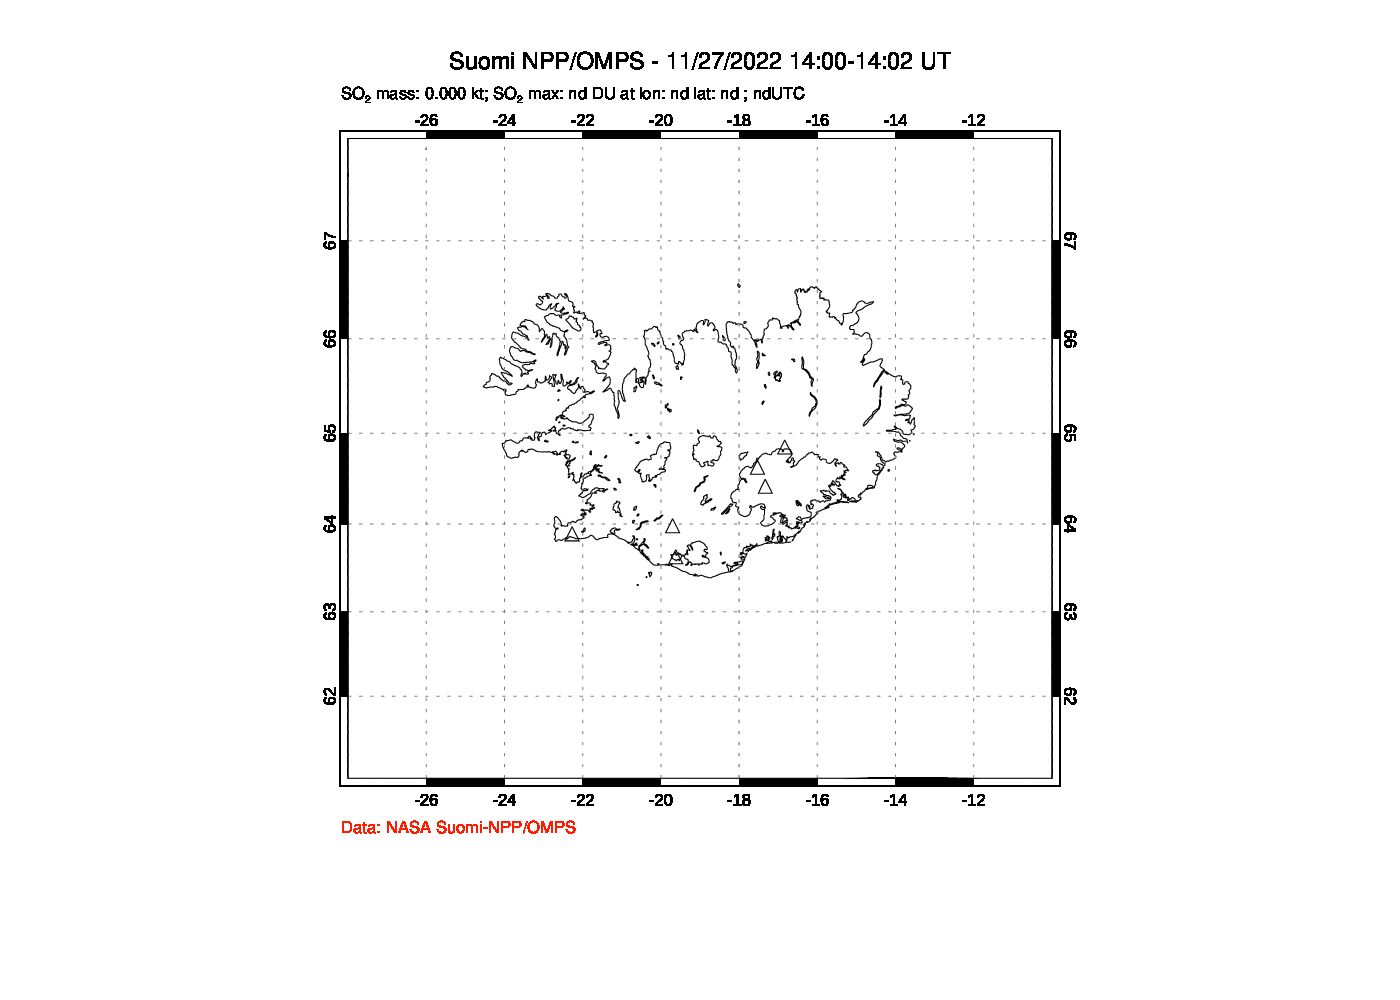 A sulfur dioxide image over Iceland on Nov 27, 2022.